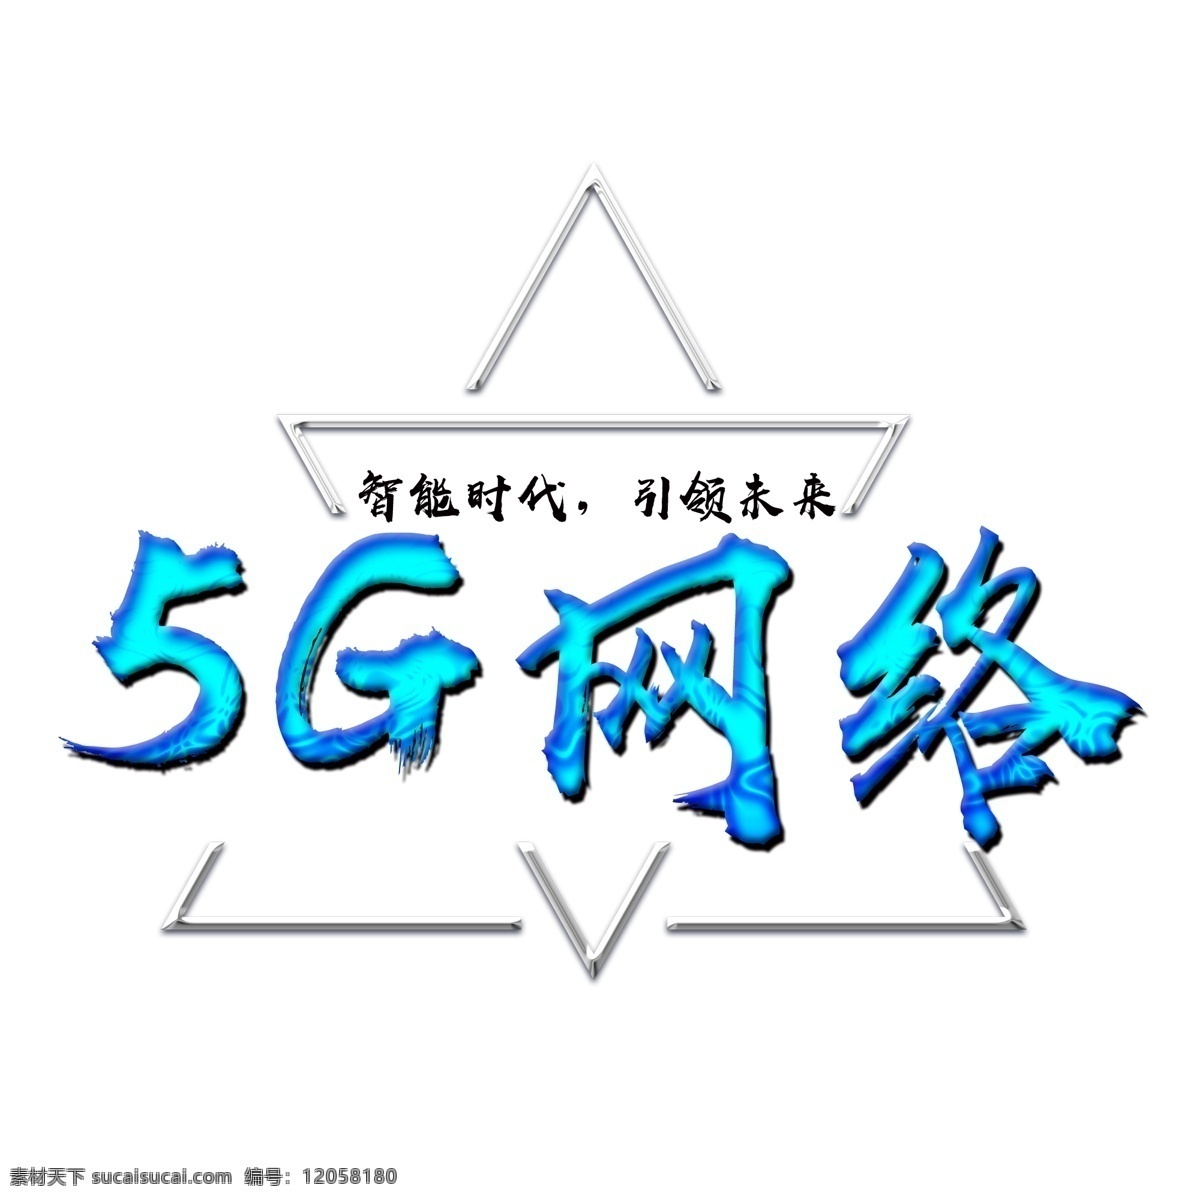 5g 网络 蓝色 文字 图 时代 字母 未来 科技 科技时代 网络时代